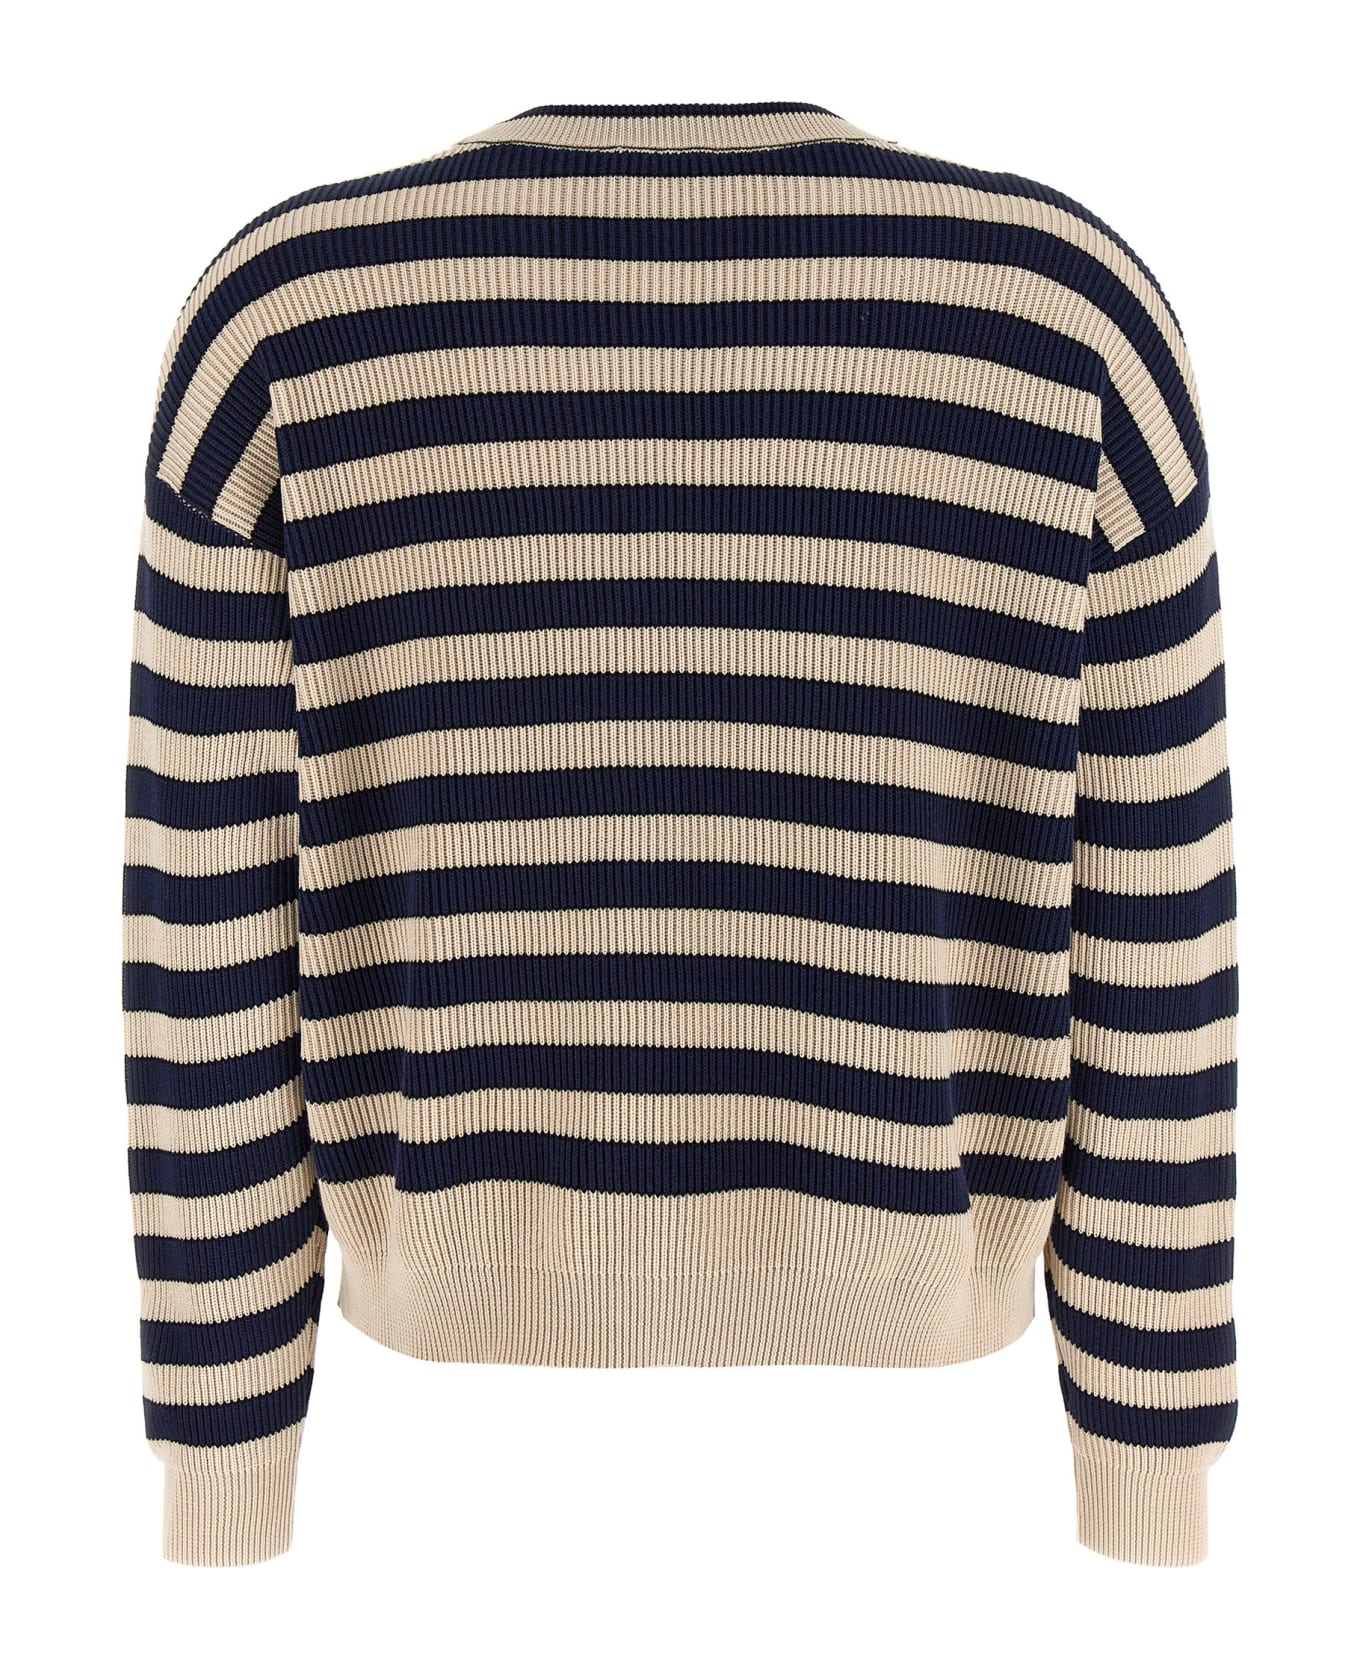 Brunello Cucinelli Striped Sweater - Multicolor